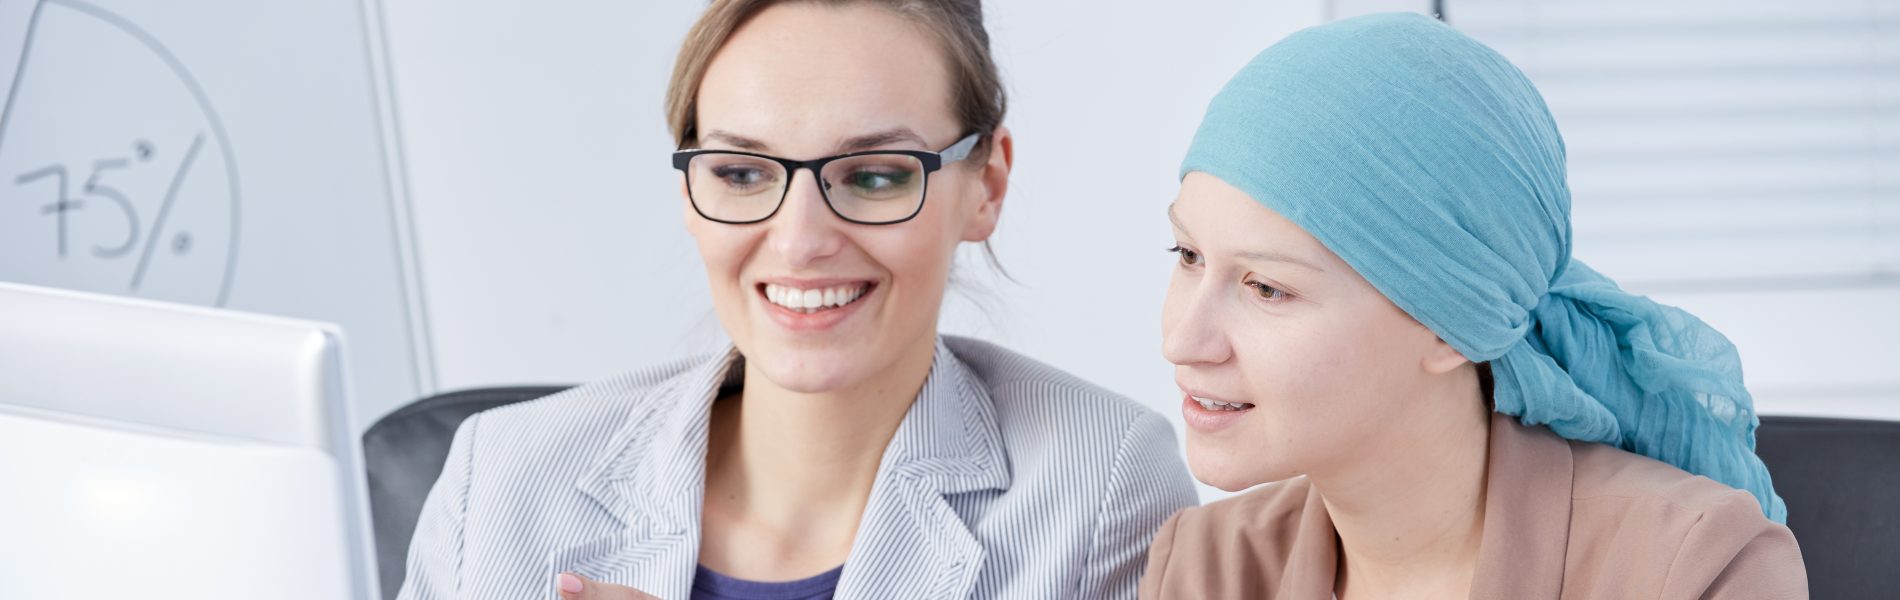 40% מהנשים שמתמודדות עם סרטן השד לא מקבלות תמיכה במקום העבודה